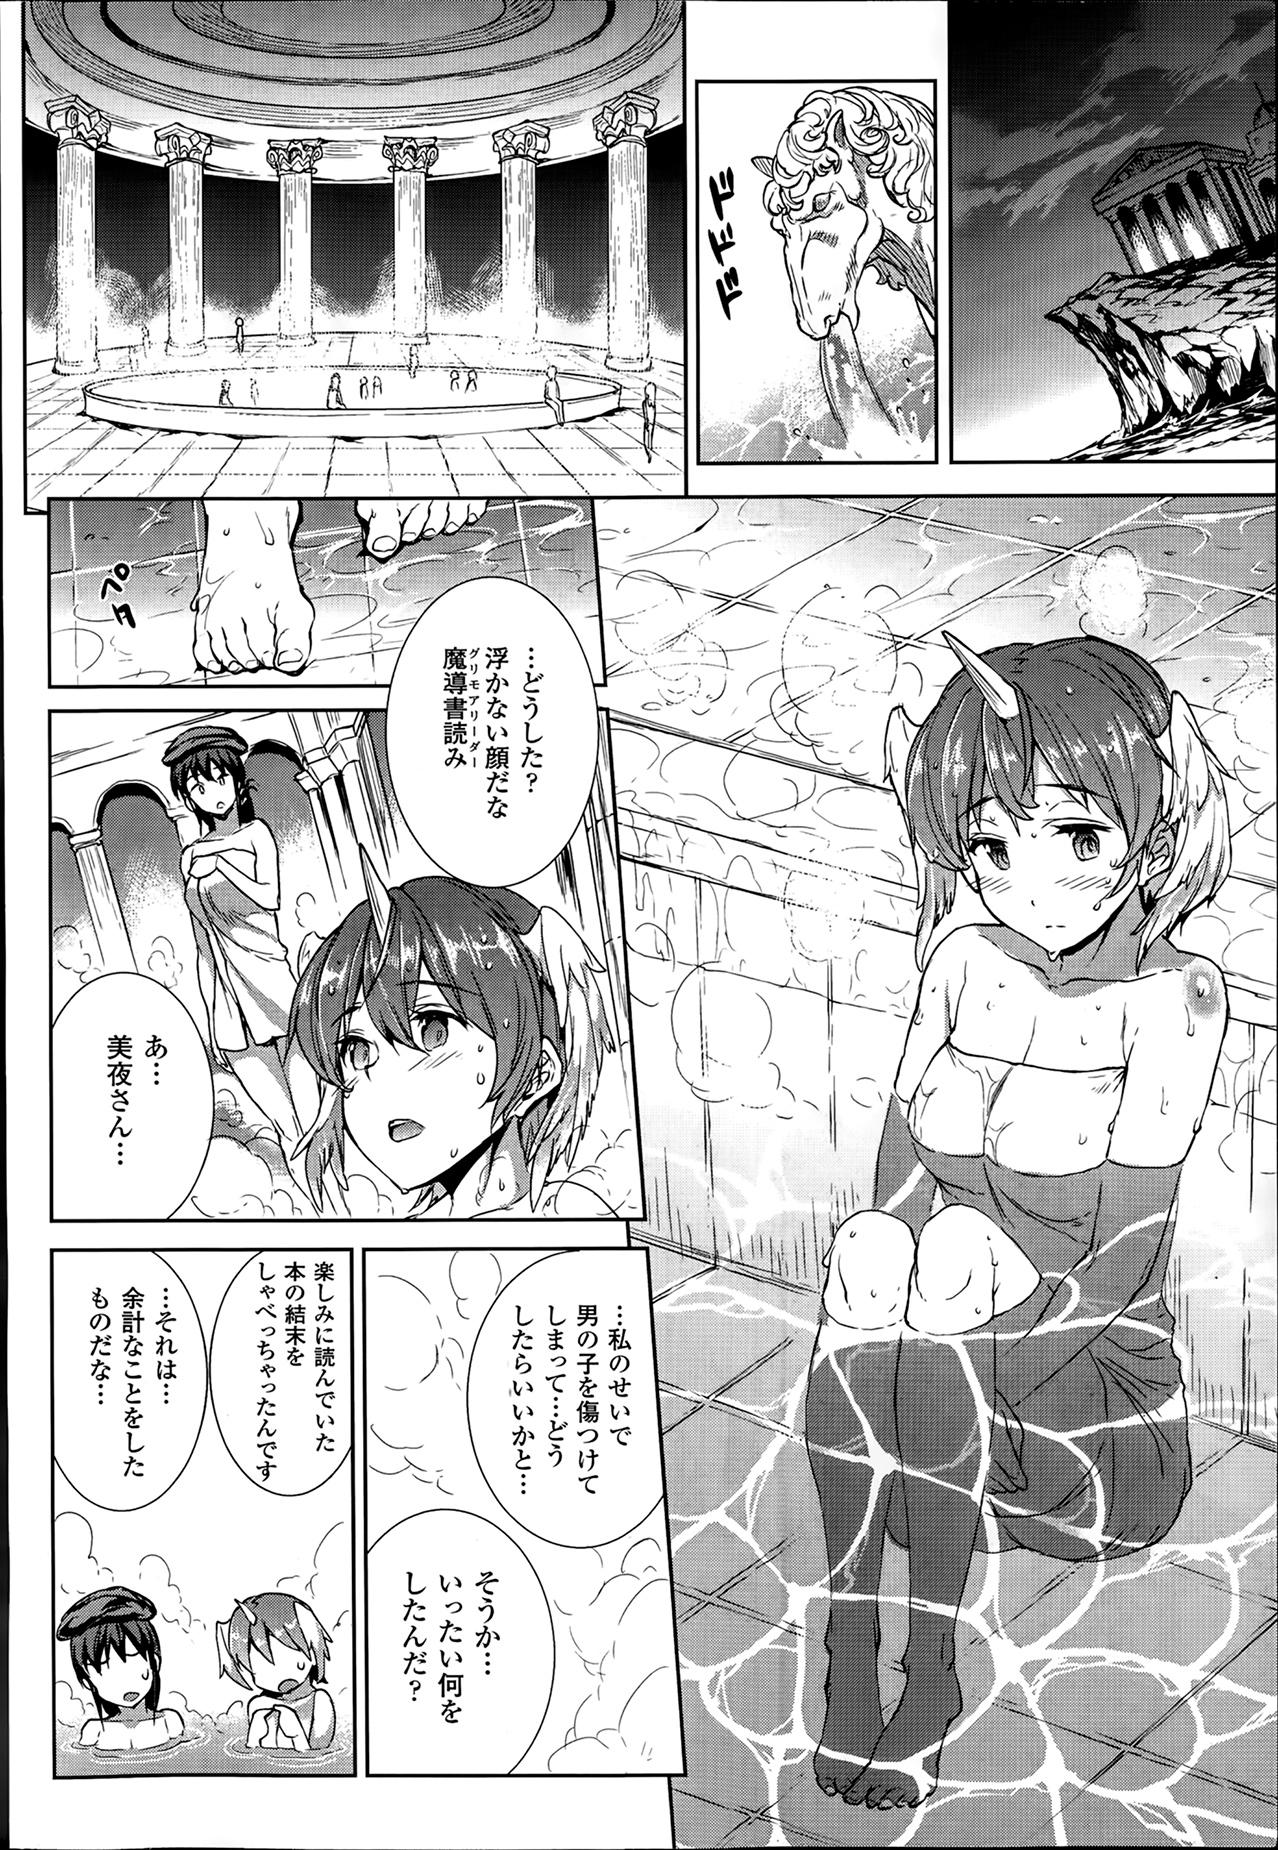 [Erect Sawaru] Shinkyoku no Grimoire -PANDRA saga 2nd story- Ch. 7-12 102